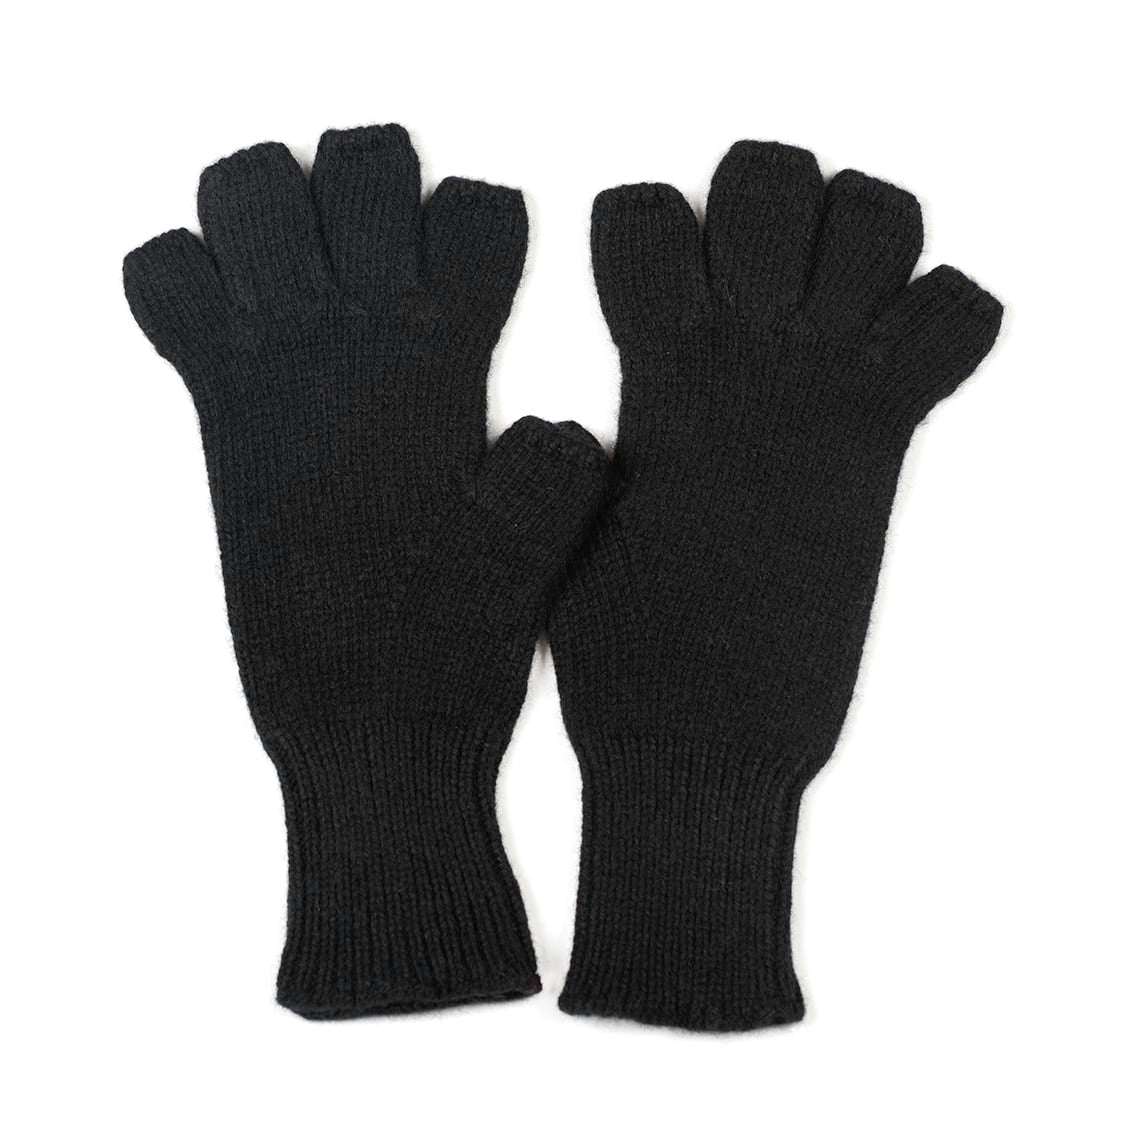 The Ladies Fingerless Gloves